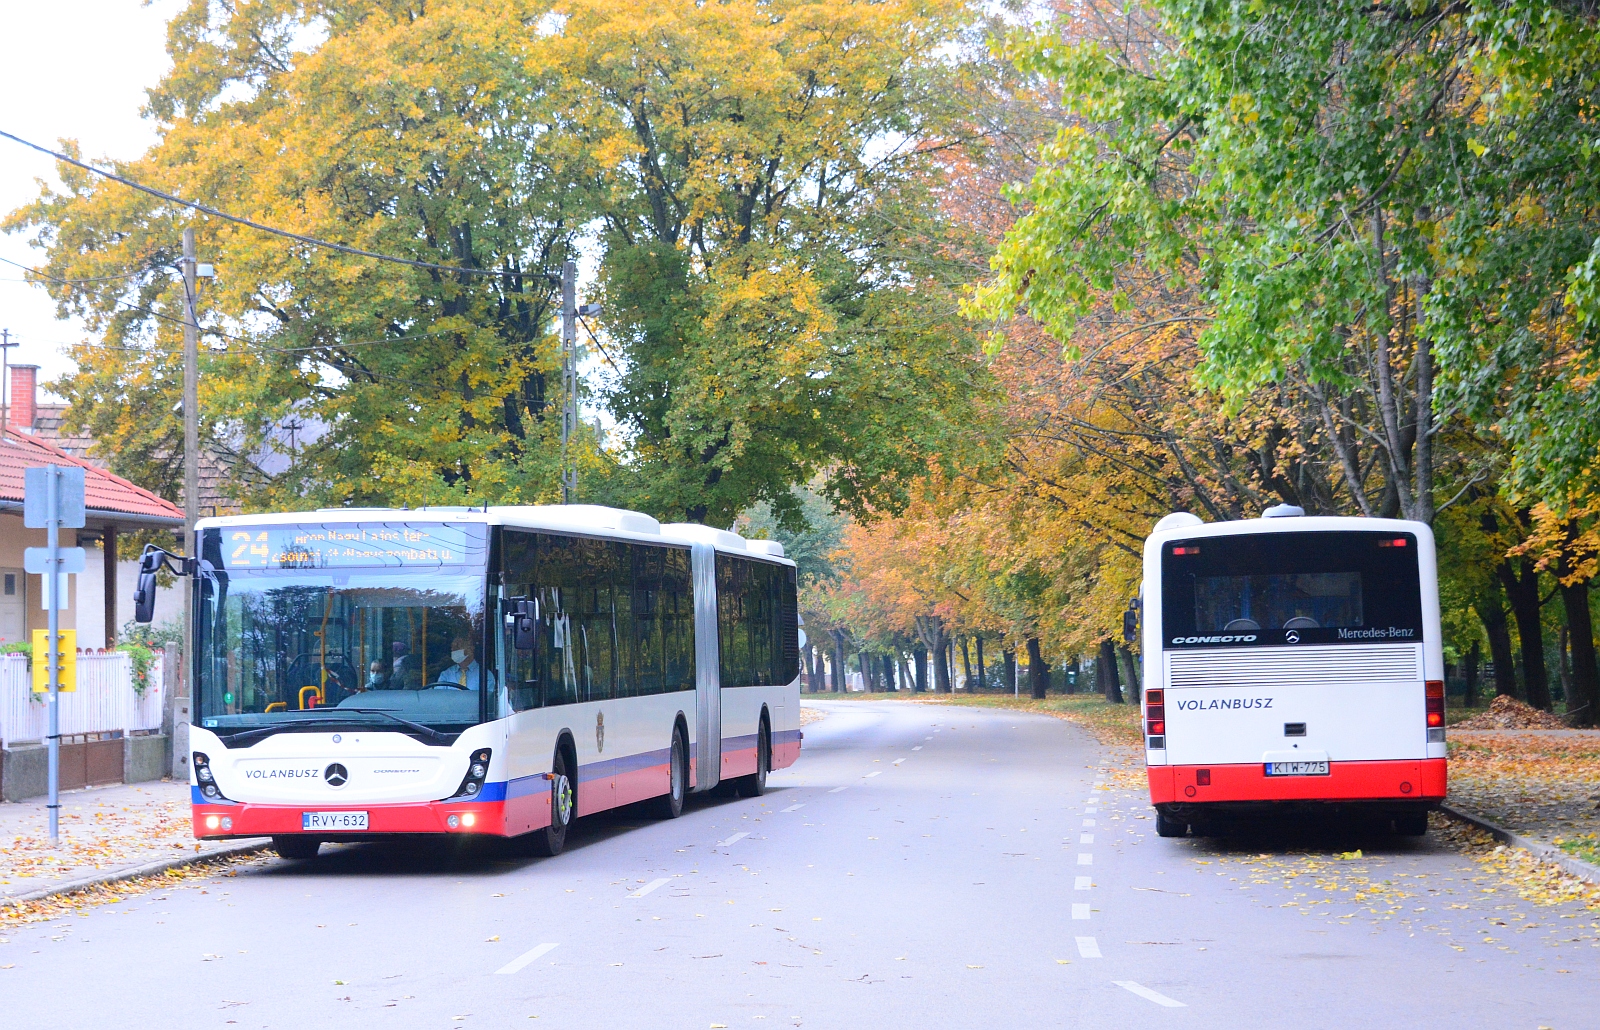 Ingyenes lesz a tömegközlekedés szombaton és vasárnap Székesfehérváron